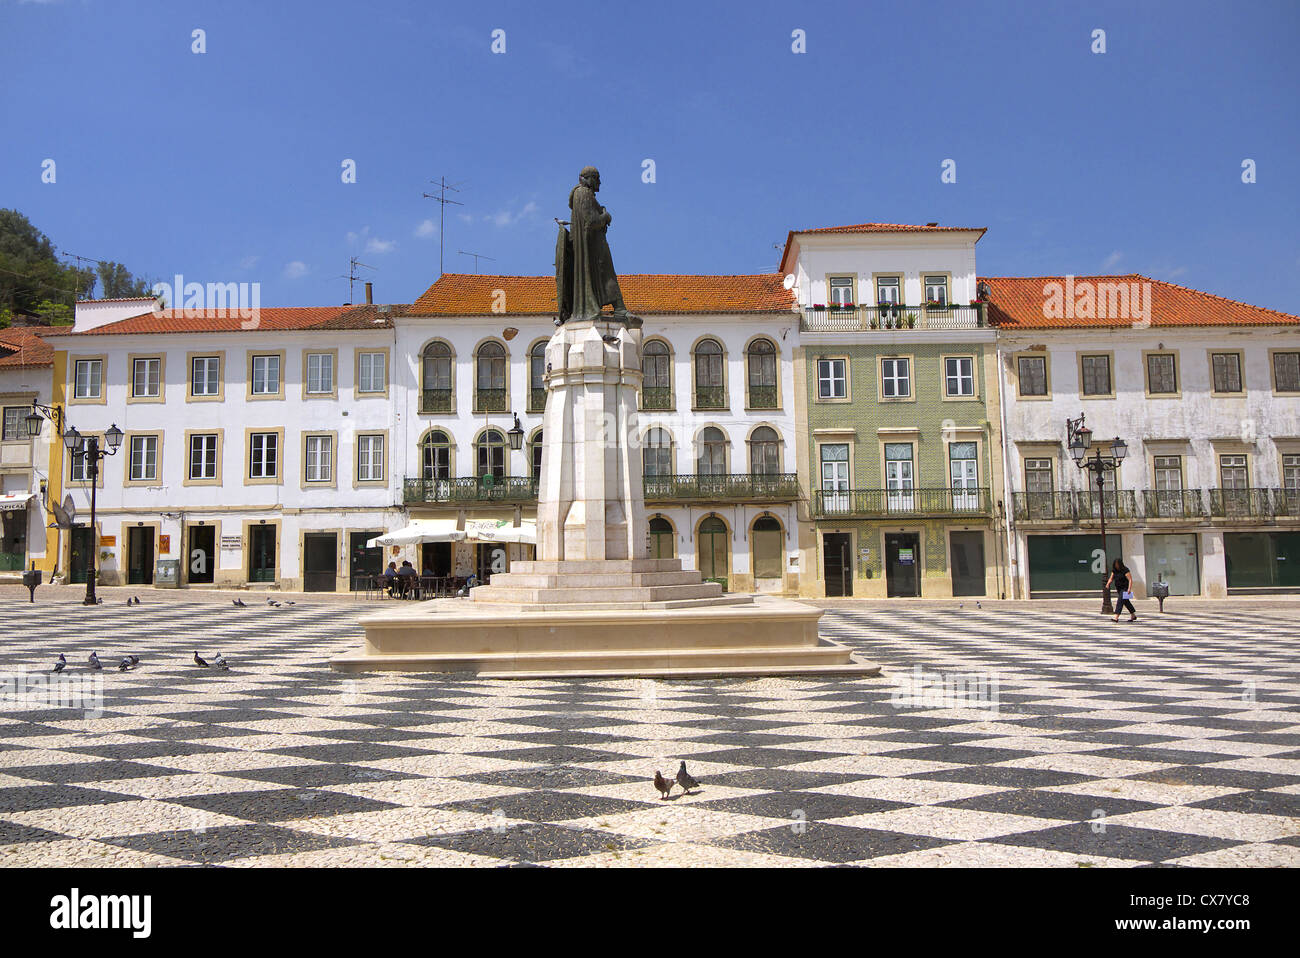 Statue of Gualdim Pais in the Plaza Da Republica in Tomar, Portugal. Stock Photo